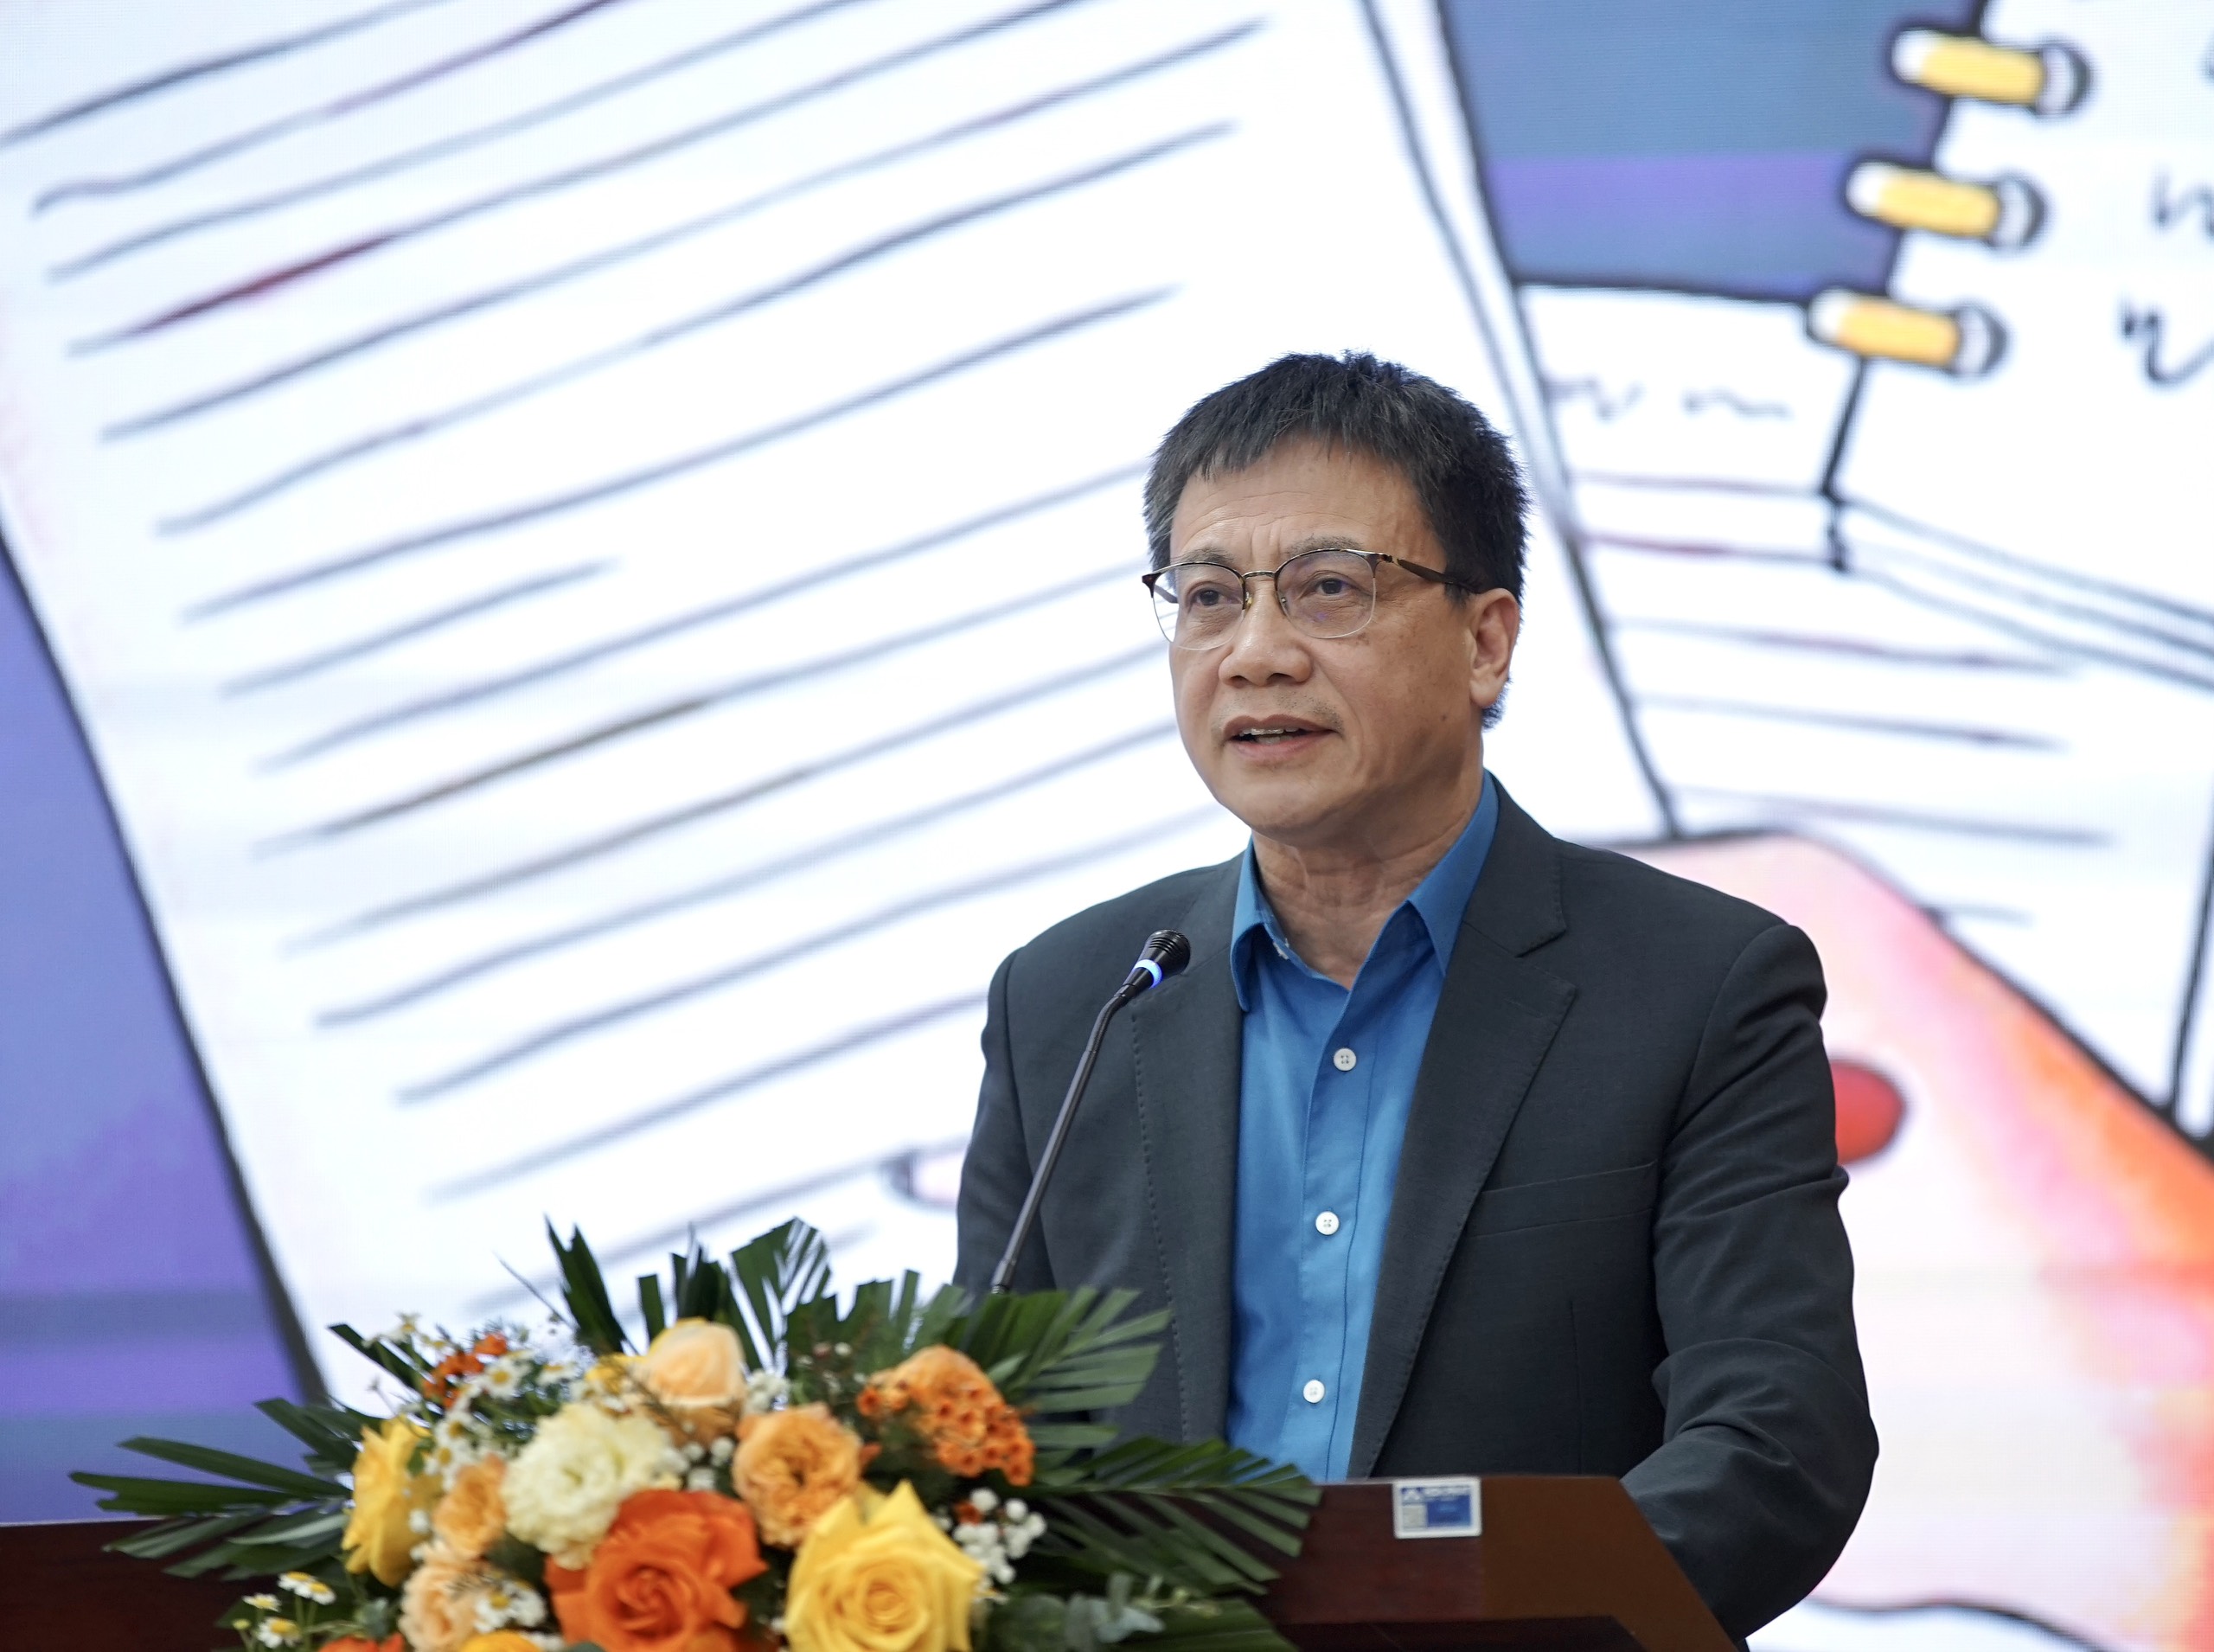 Ông Nguyễn Ngọc Ân - Chủ tịch Công đoàn Giáo dục Việt Nam đánh giá cuộc thi đã tạo tiếng vang lớn và hiệu ứng tích cực trong các nhà trường nói riêng và xã hội nói chung.